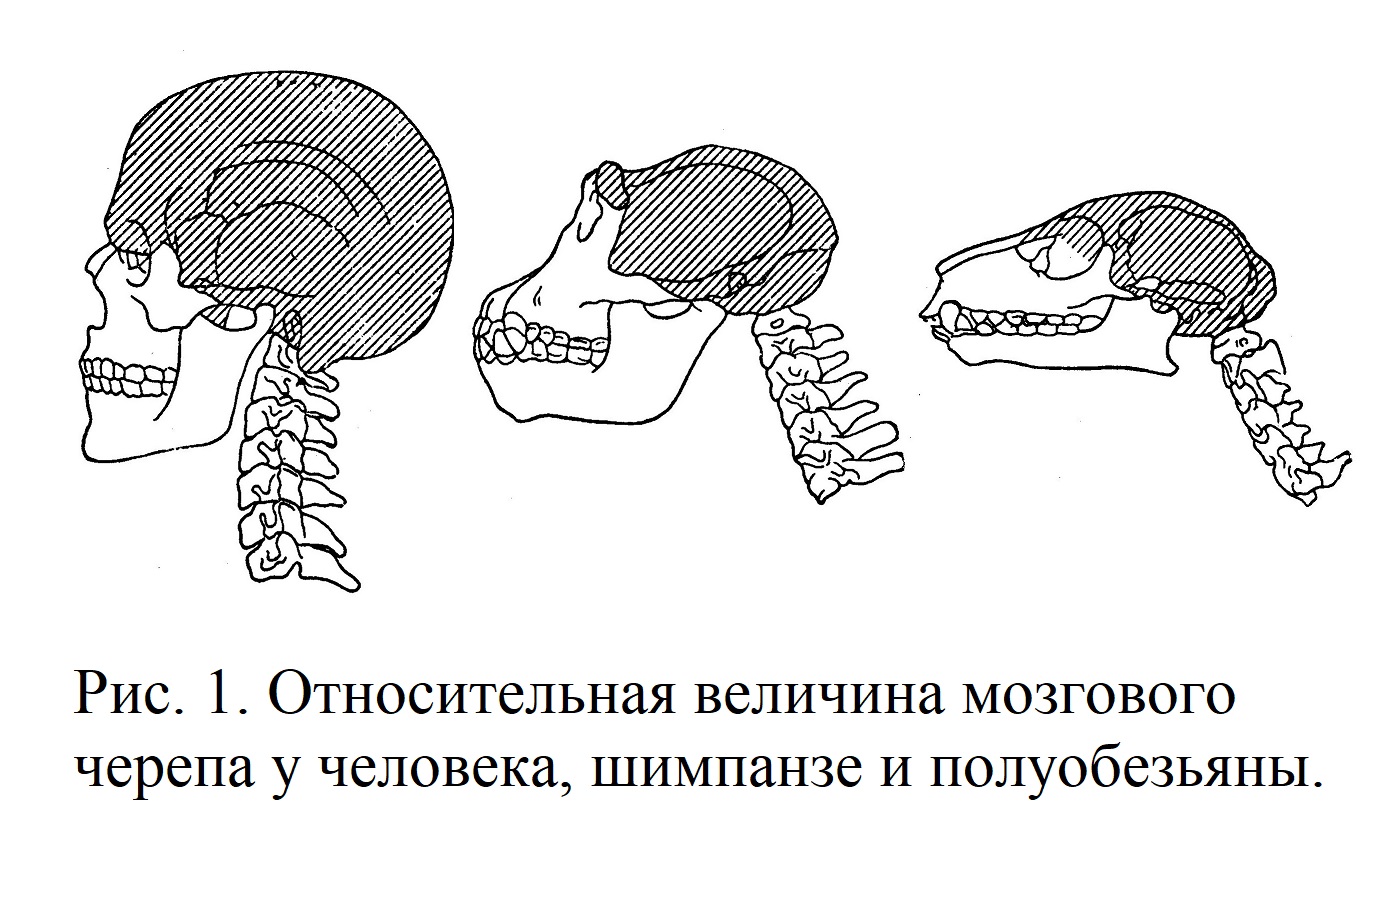 Относительная величина мозгового черепа у человека, шимпанзе и полуобезьяны.